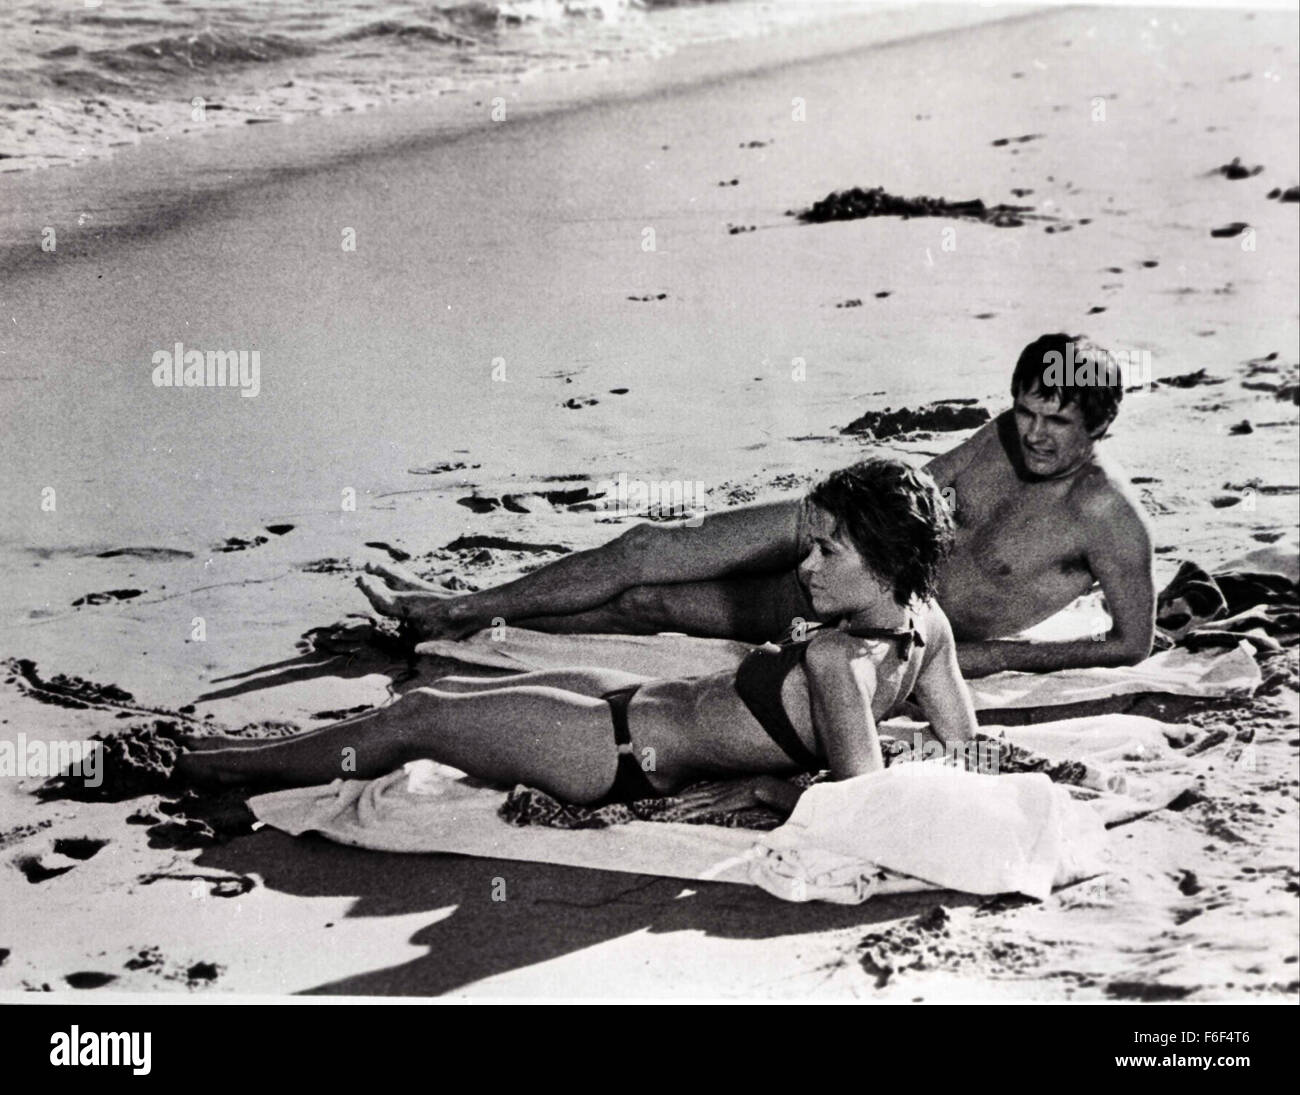 1. Februar 1979; London, UK; Amerikanischen Schauspieler JANE FONDA und ALAN ALDA sind zusammen am Malibu Beach, Kalifornien, dargestellt, wo sie sich ein neues Bild namens "California Suite" beschäftigen.  Alda ist bekannt für seine Rolle in "Mash" und Jane für ihre preisgekrönten Rolle in "Klute". Stockfoto